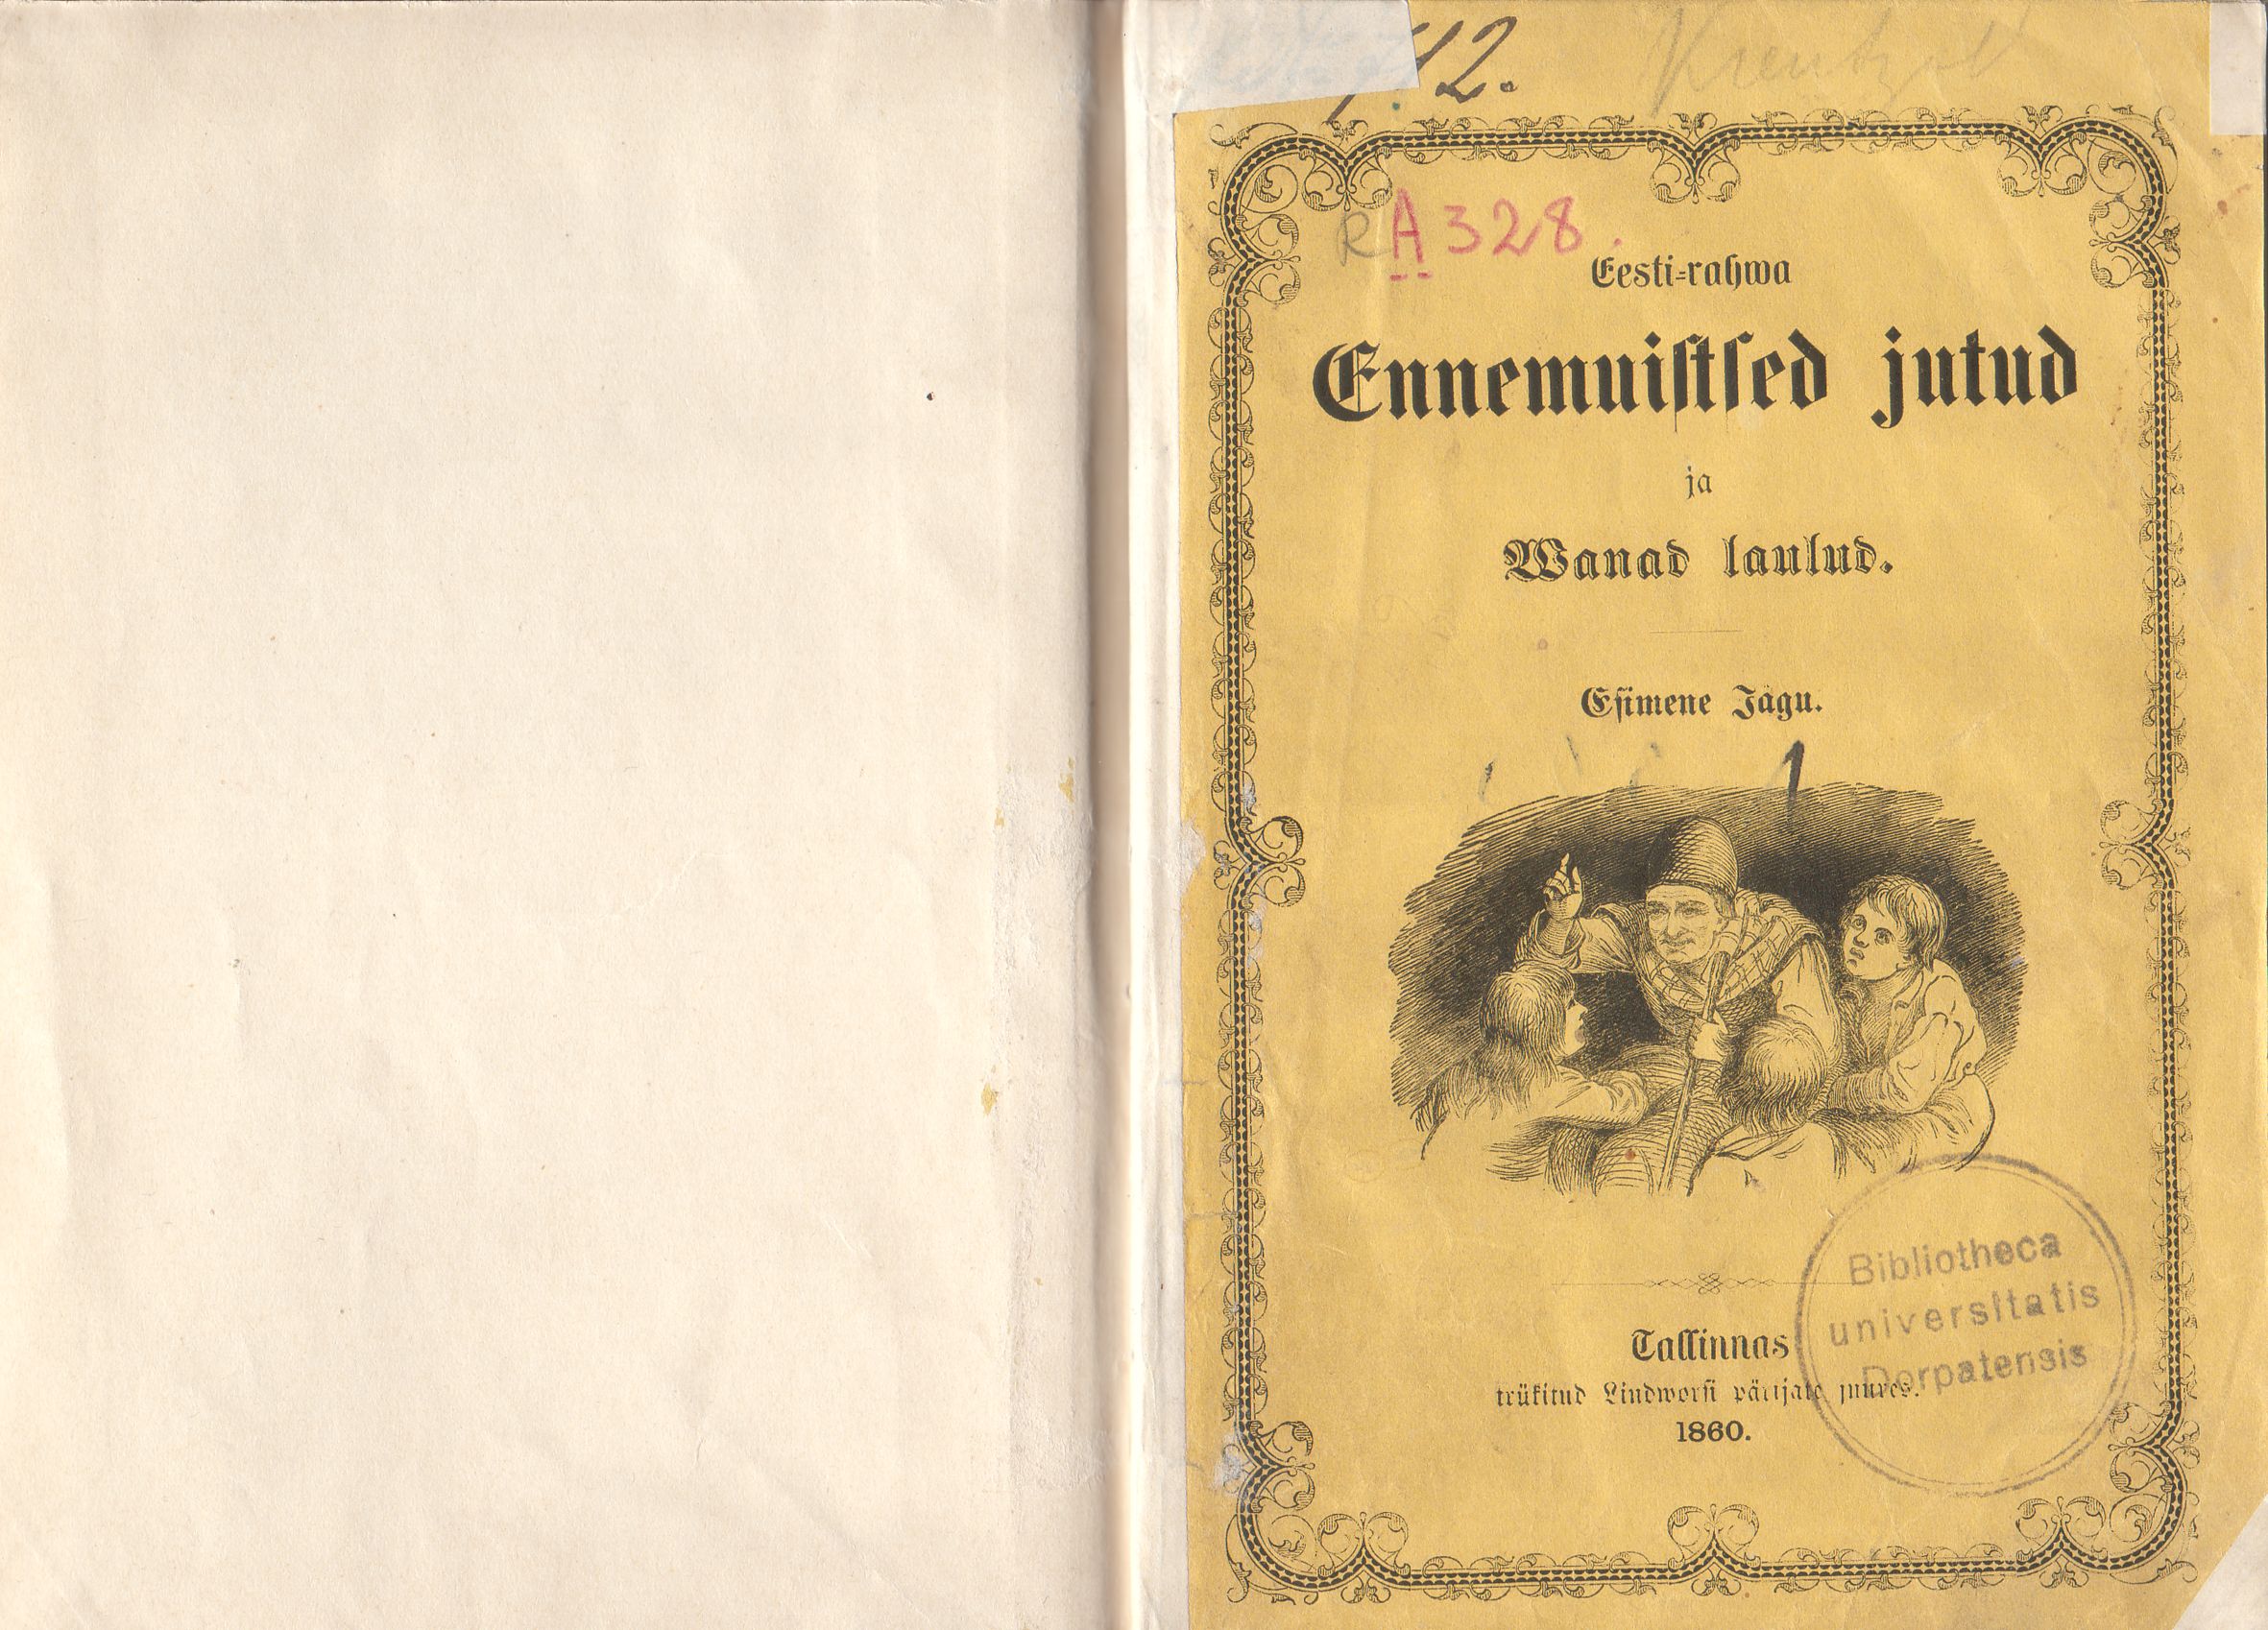 Eesti rahva ennemuistsed jutud ja vanad laulud (1860) | 2. Front cover